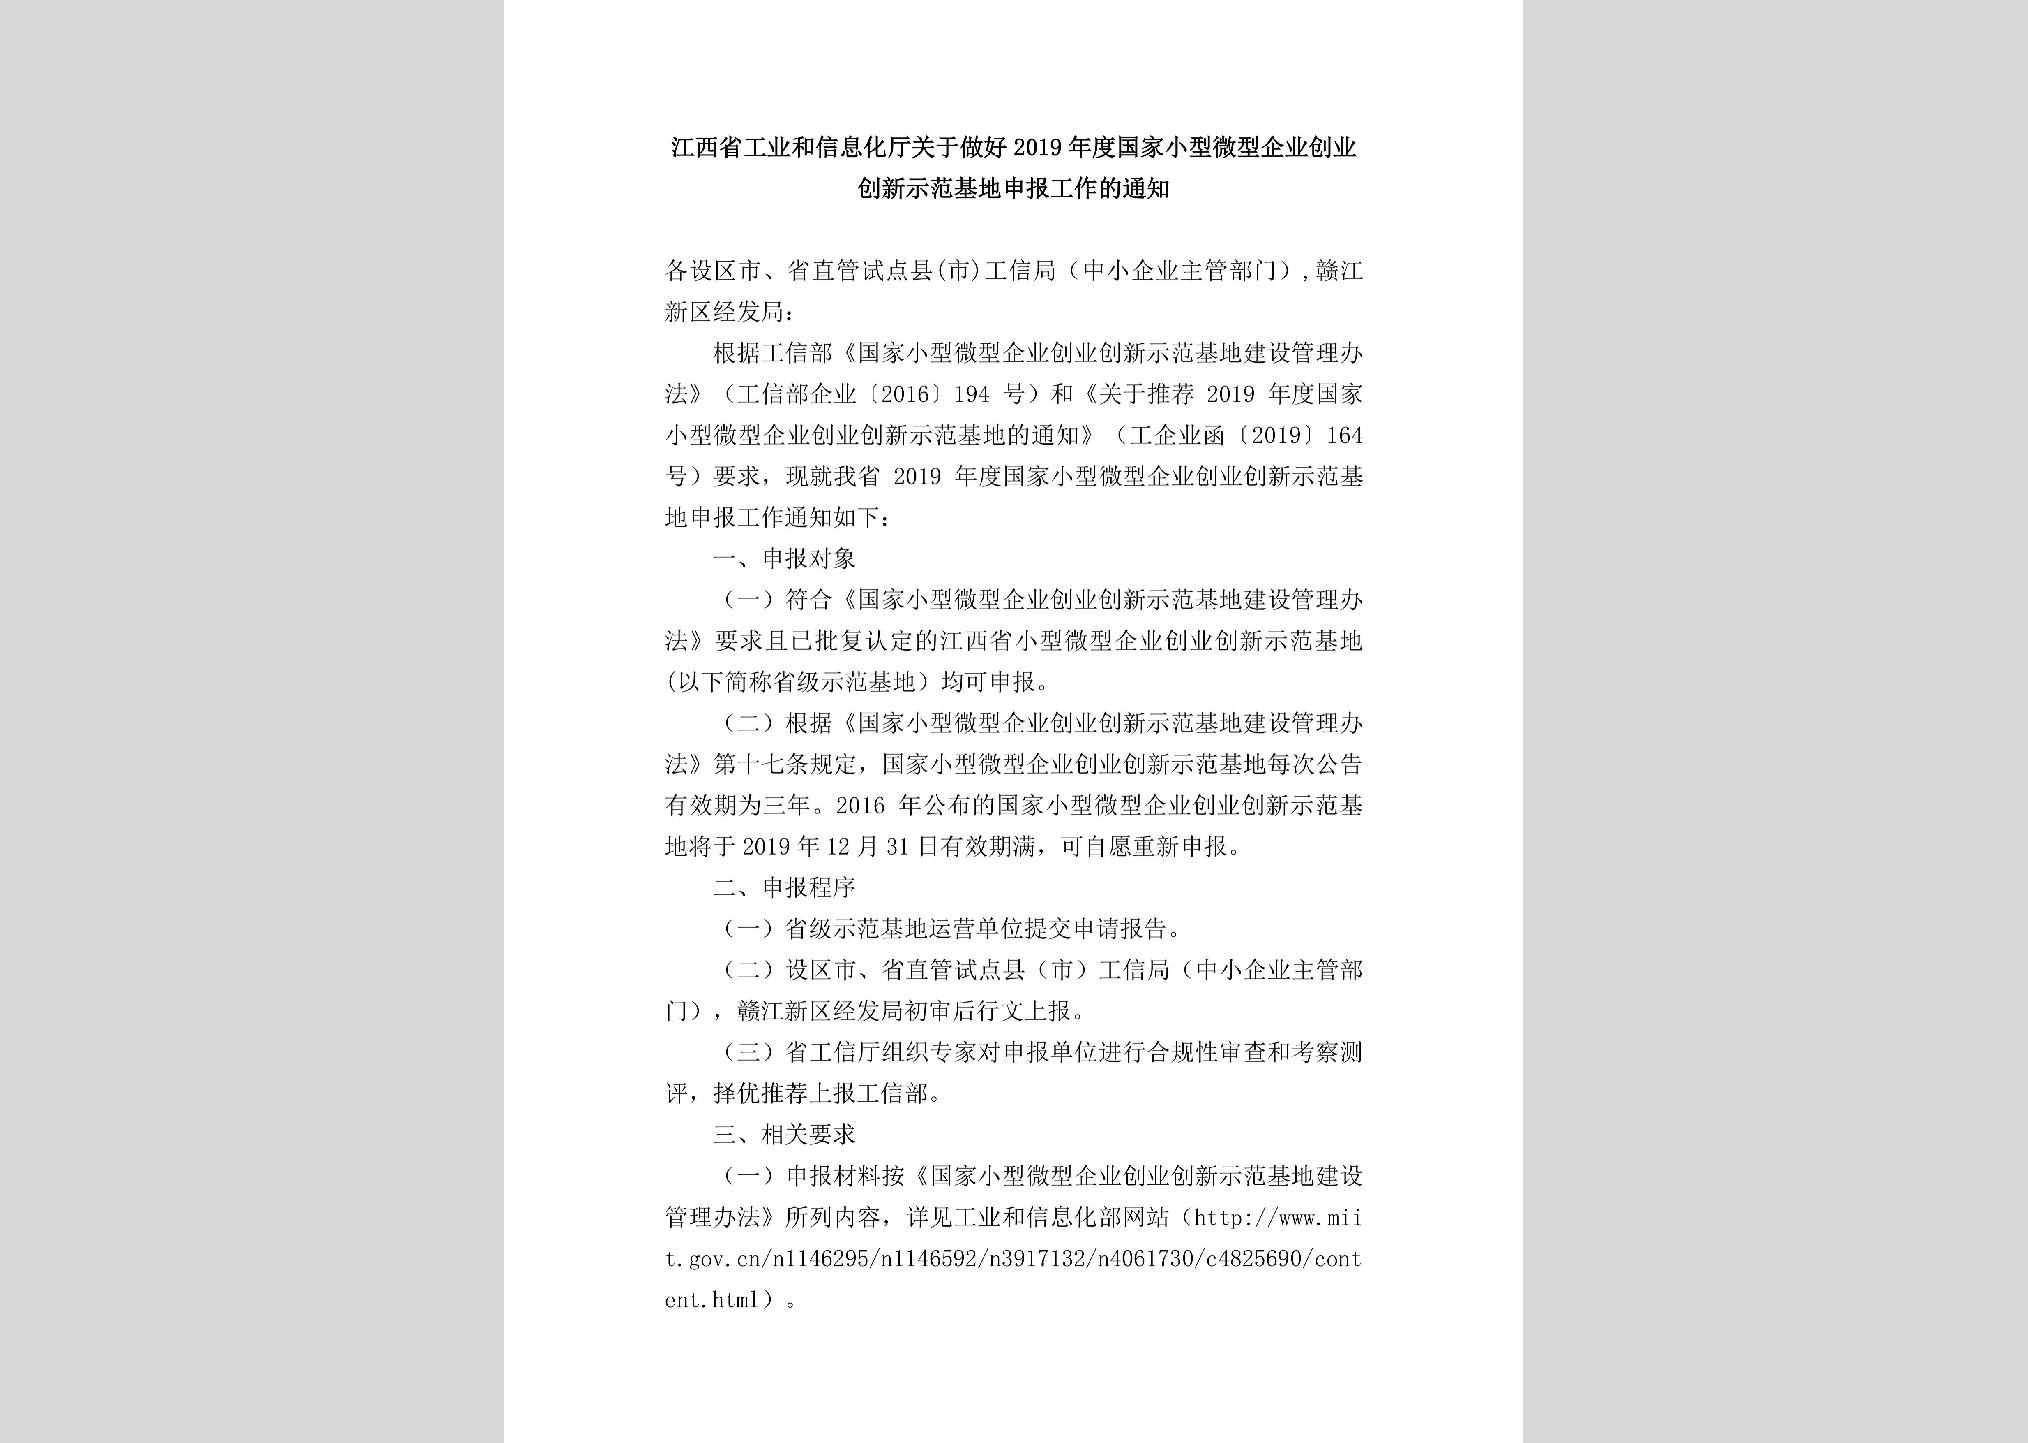 JX-GJXXWXQY-2019：江西省工业和信息化厅关于做好2019年度国家小型微型企业创业创新示范基地申报工作的通知